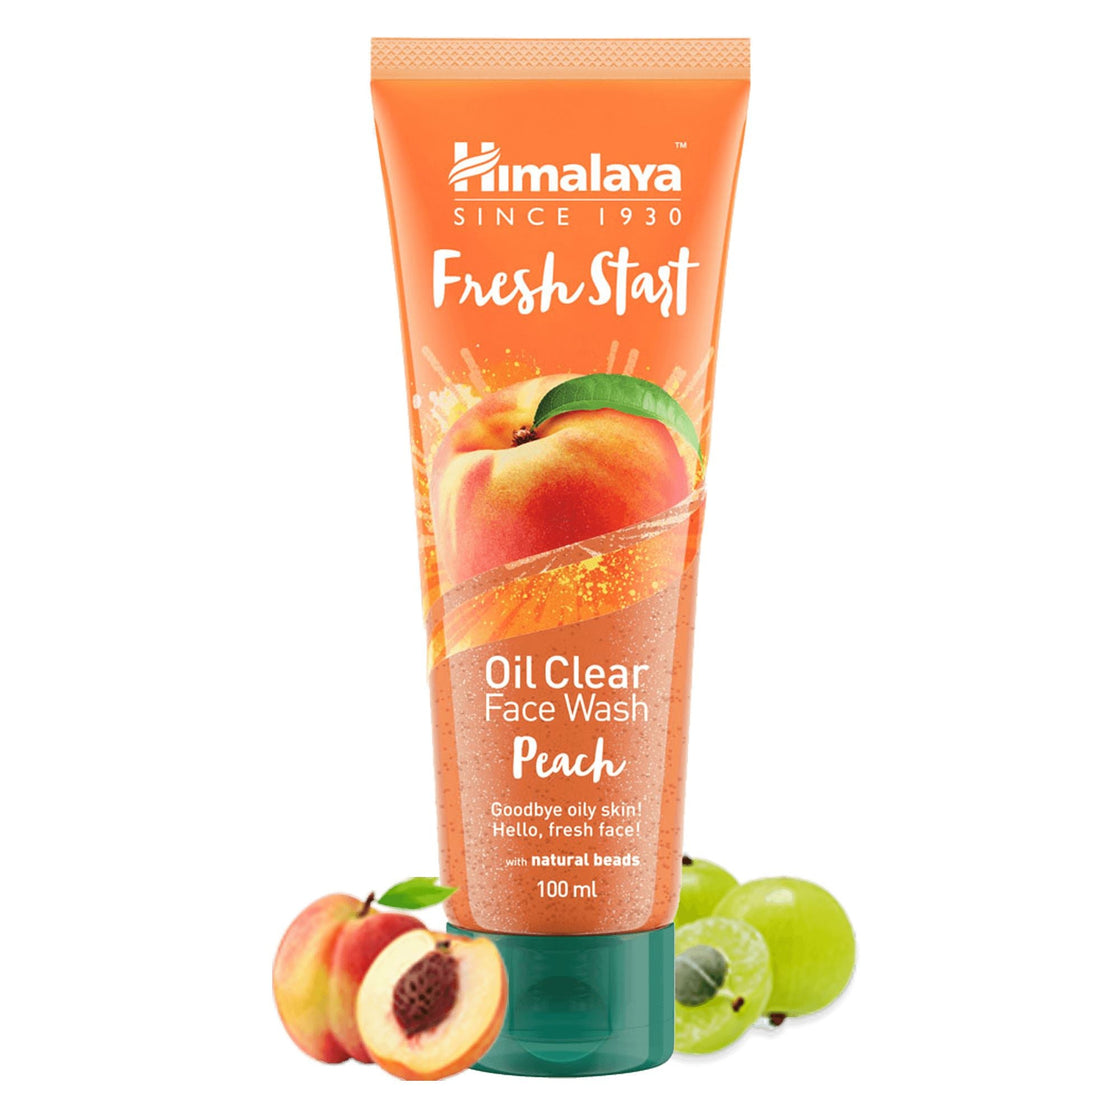 Fresh Start Oil Clear Face Wash Peach (100ML)